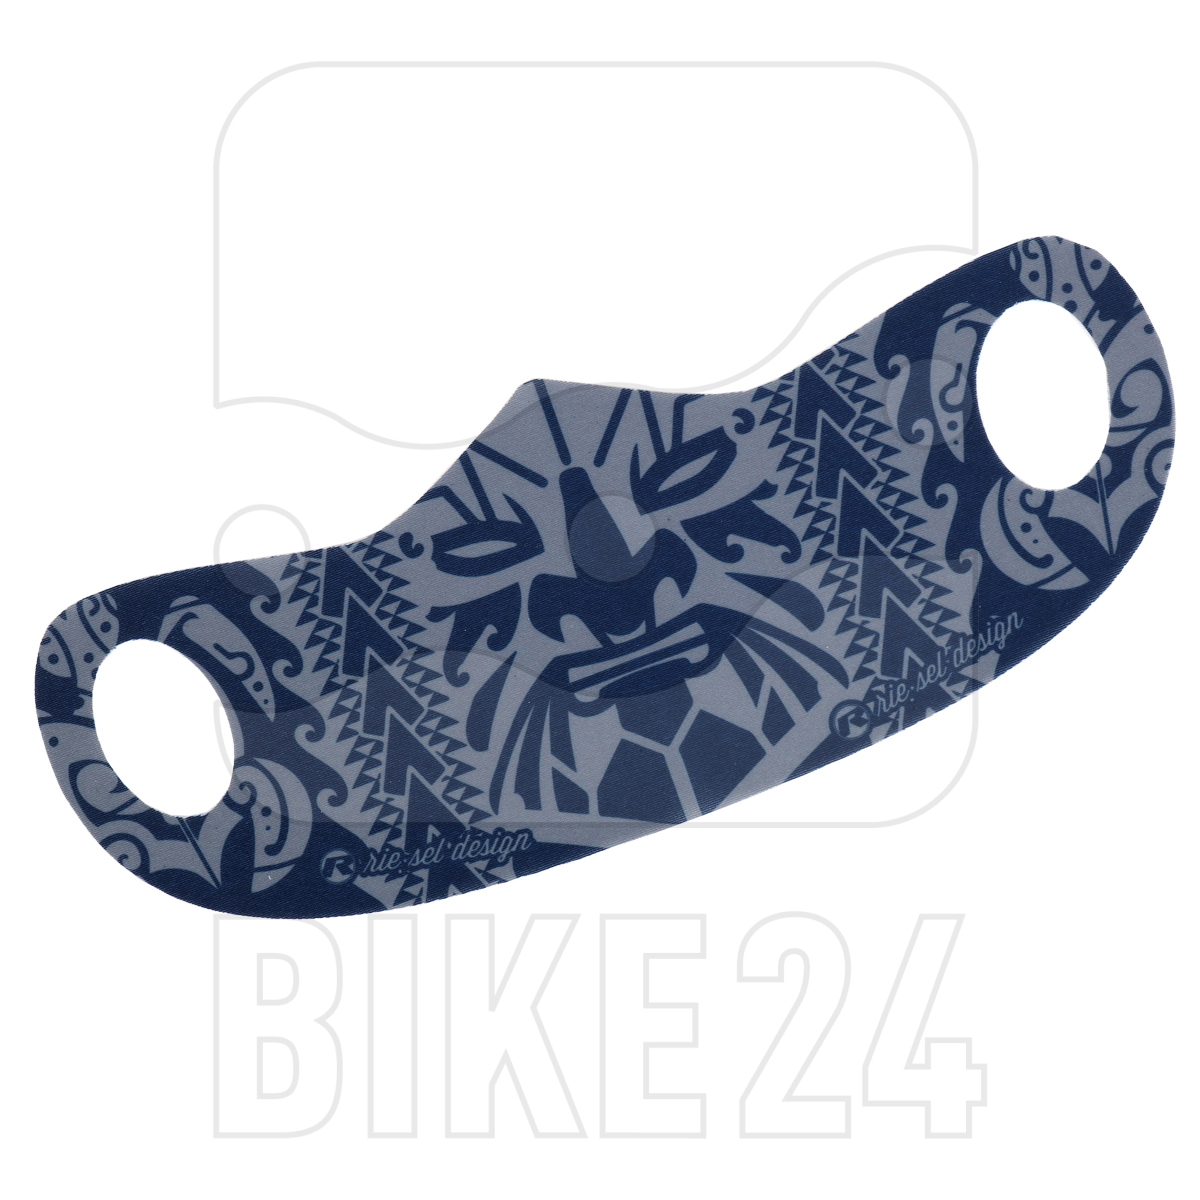 Produktbild von rie:sel design Mund- und Nasenschutz - maori navy blue